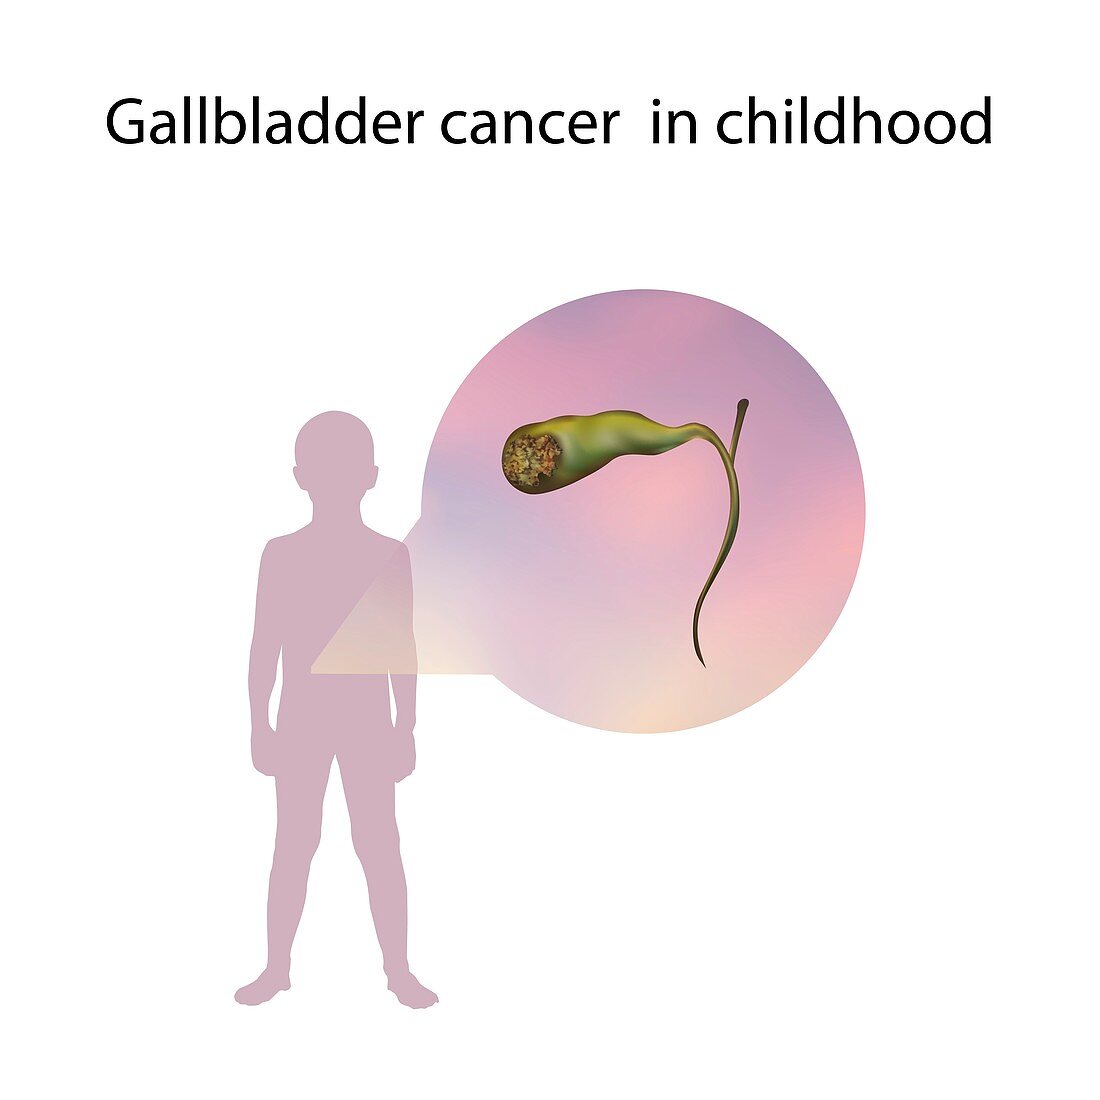 Gallbladder cancer in childhood,illustration